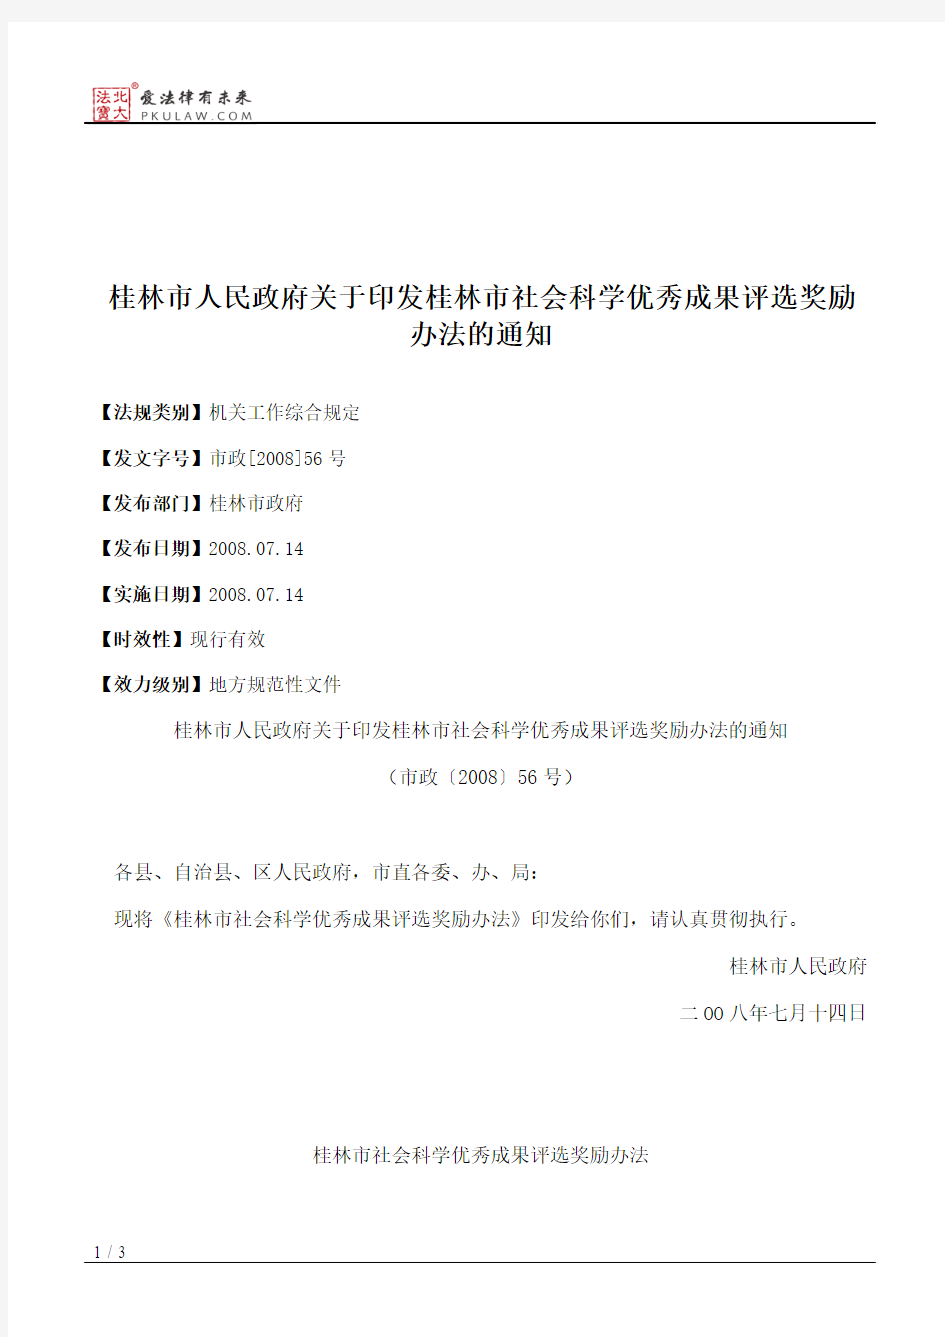 桂林市人民政府关于印发桂林市社会科学优秀成果评选奖励办法的通知